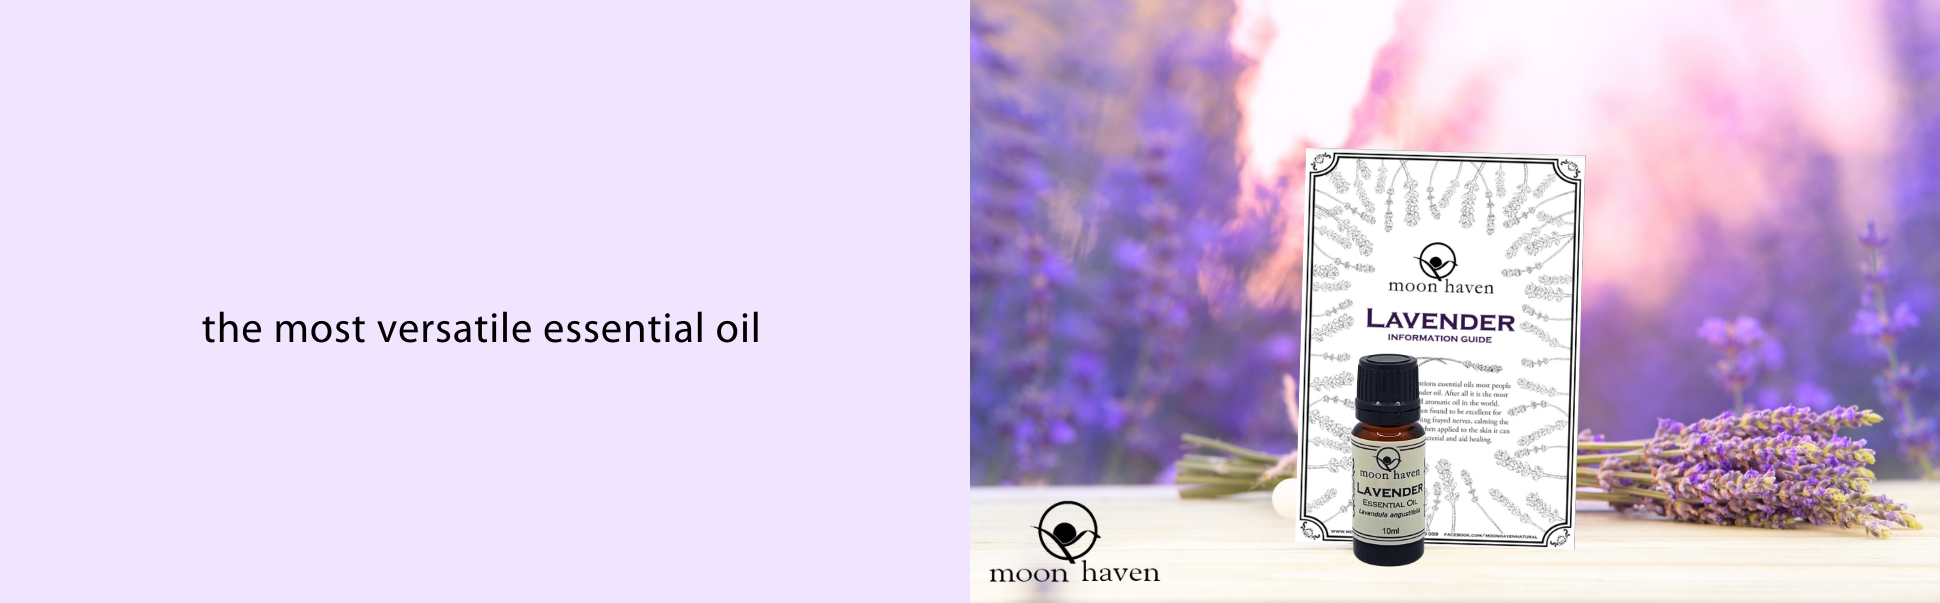 MH lavender oil